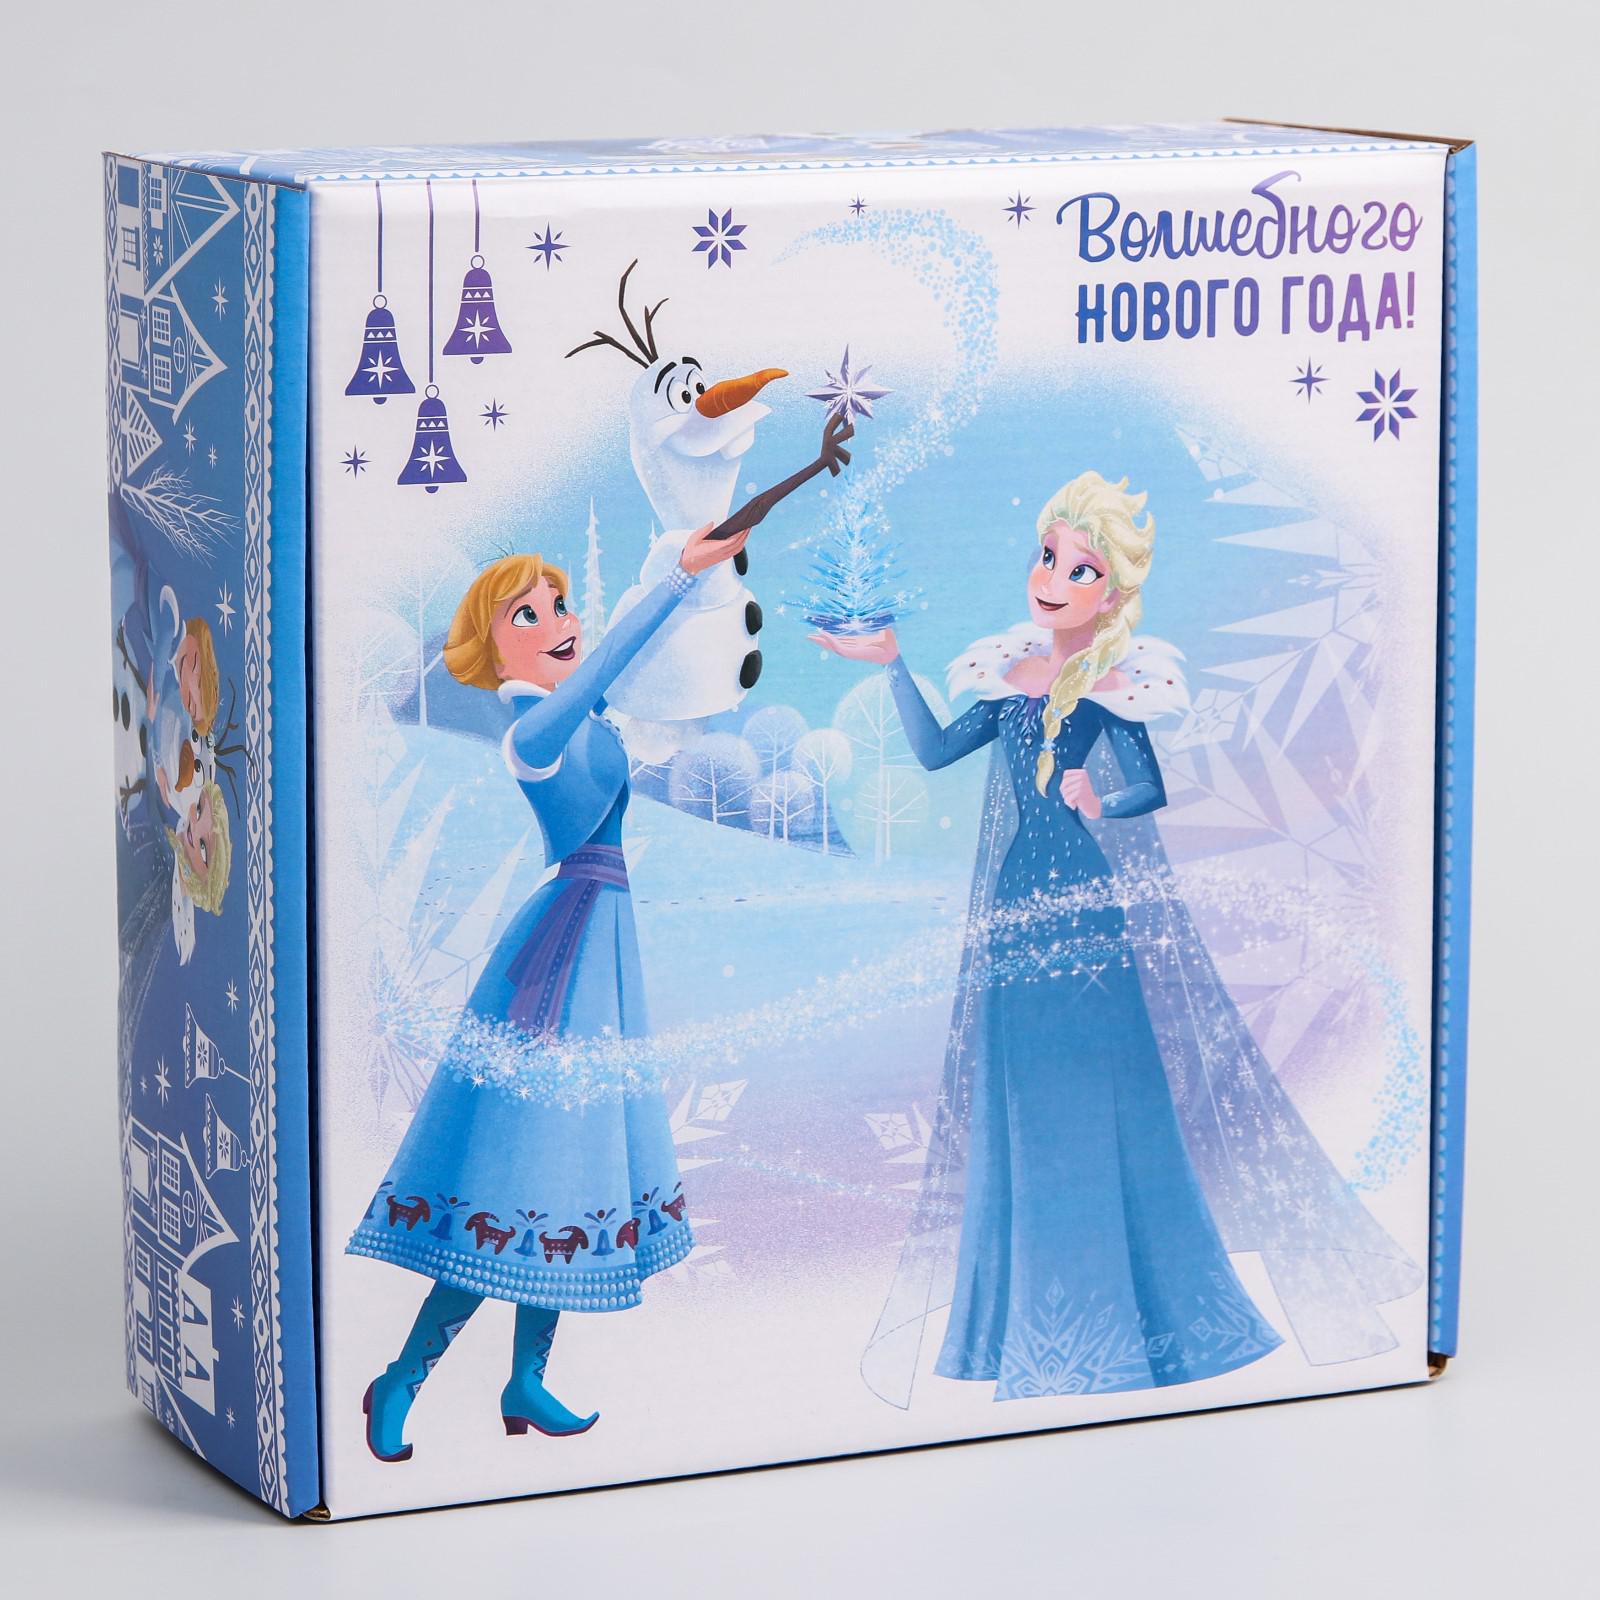 Коробка Disney подарочная складная«Волшебного нового года» Холодное сердце. 24.5×24.5×9.5 см - фото 1